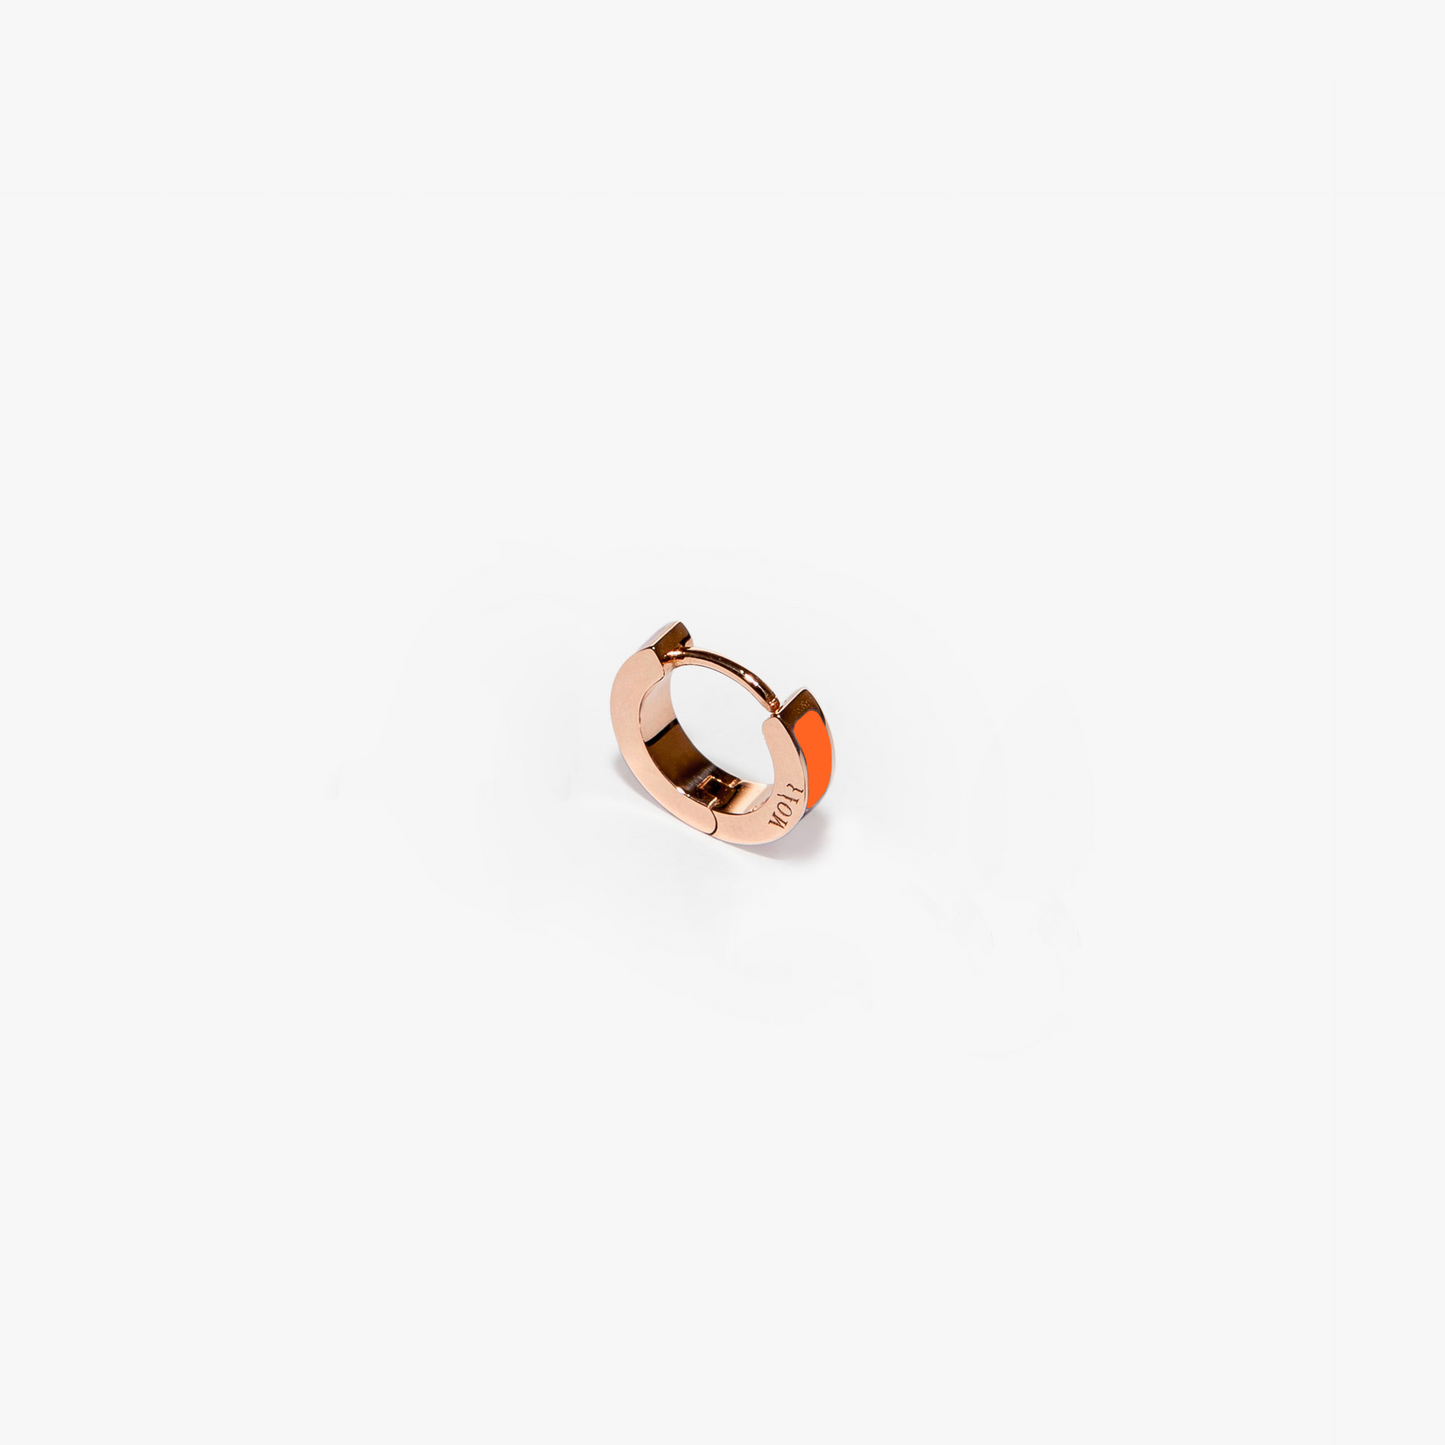 Inside orange single earring